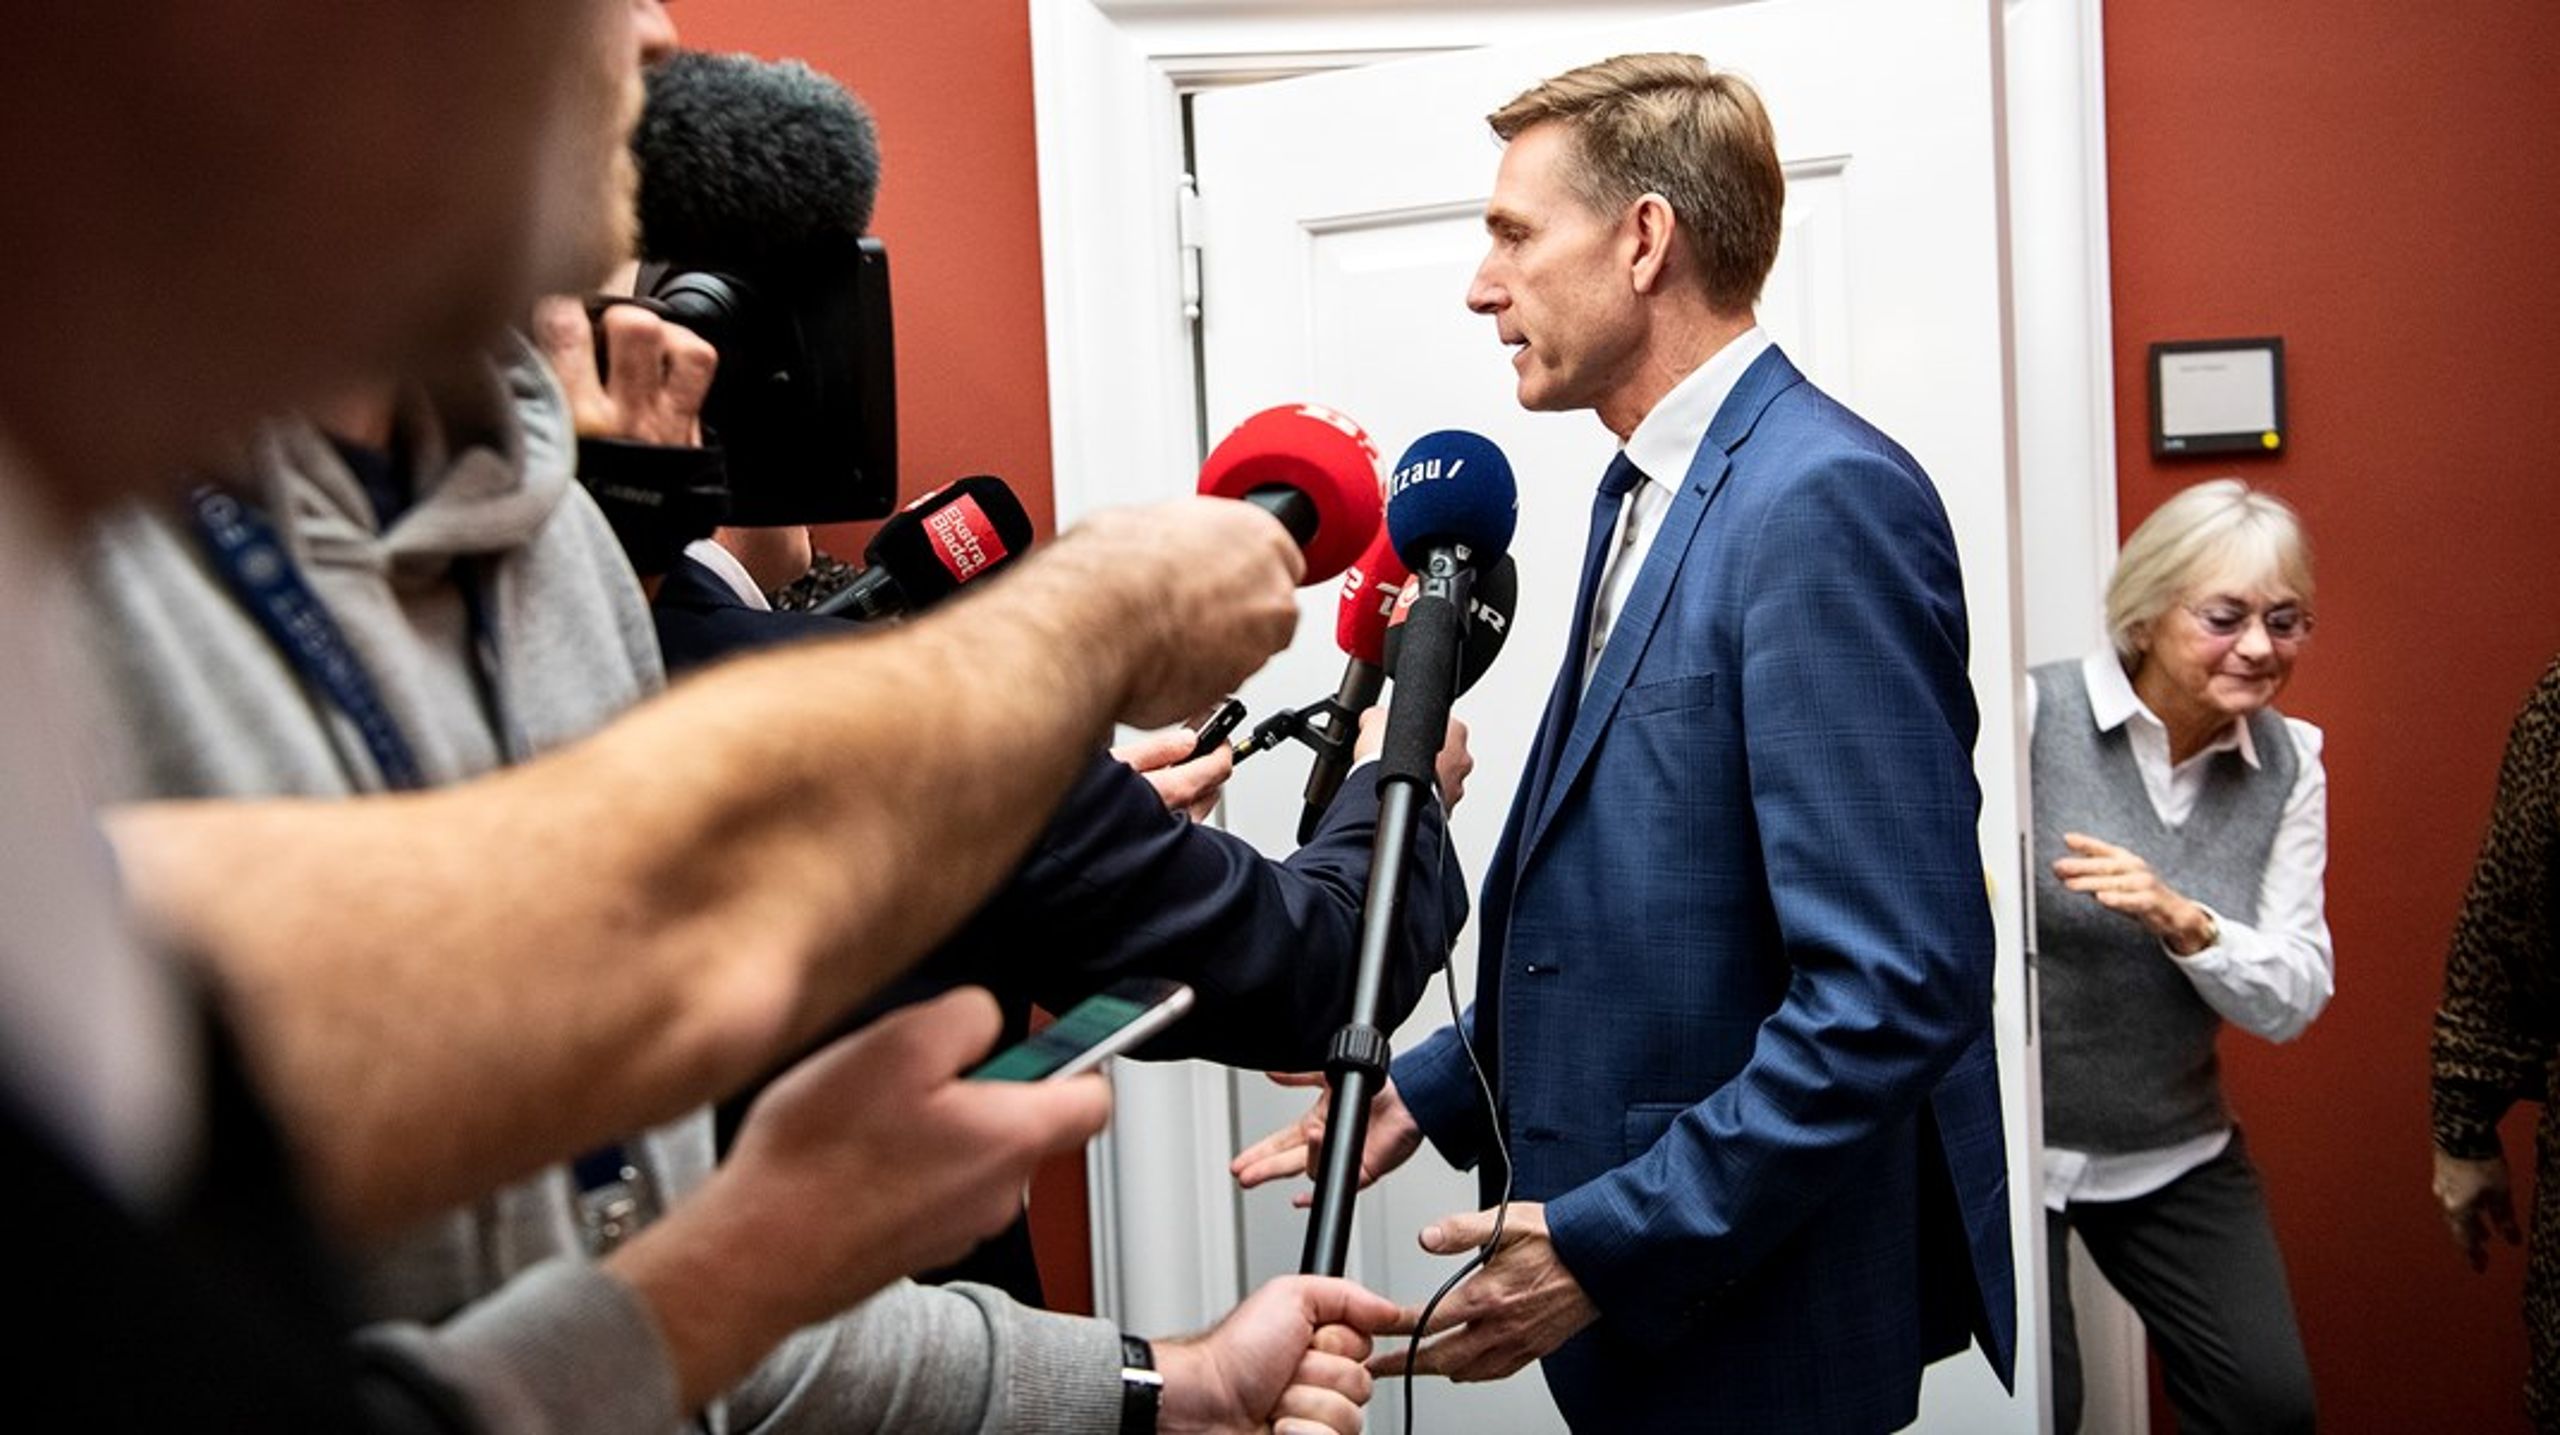 Efter et stort nederlag ved kommunalvalget i november, hvor Dansk Folkeparti blev mere end halveret, meddelte formand Kristian Thulesen Dahl, at han trækker sig som formand.